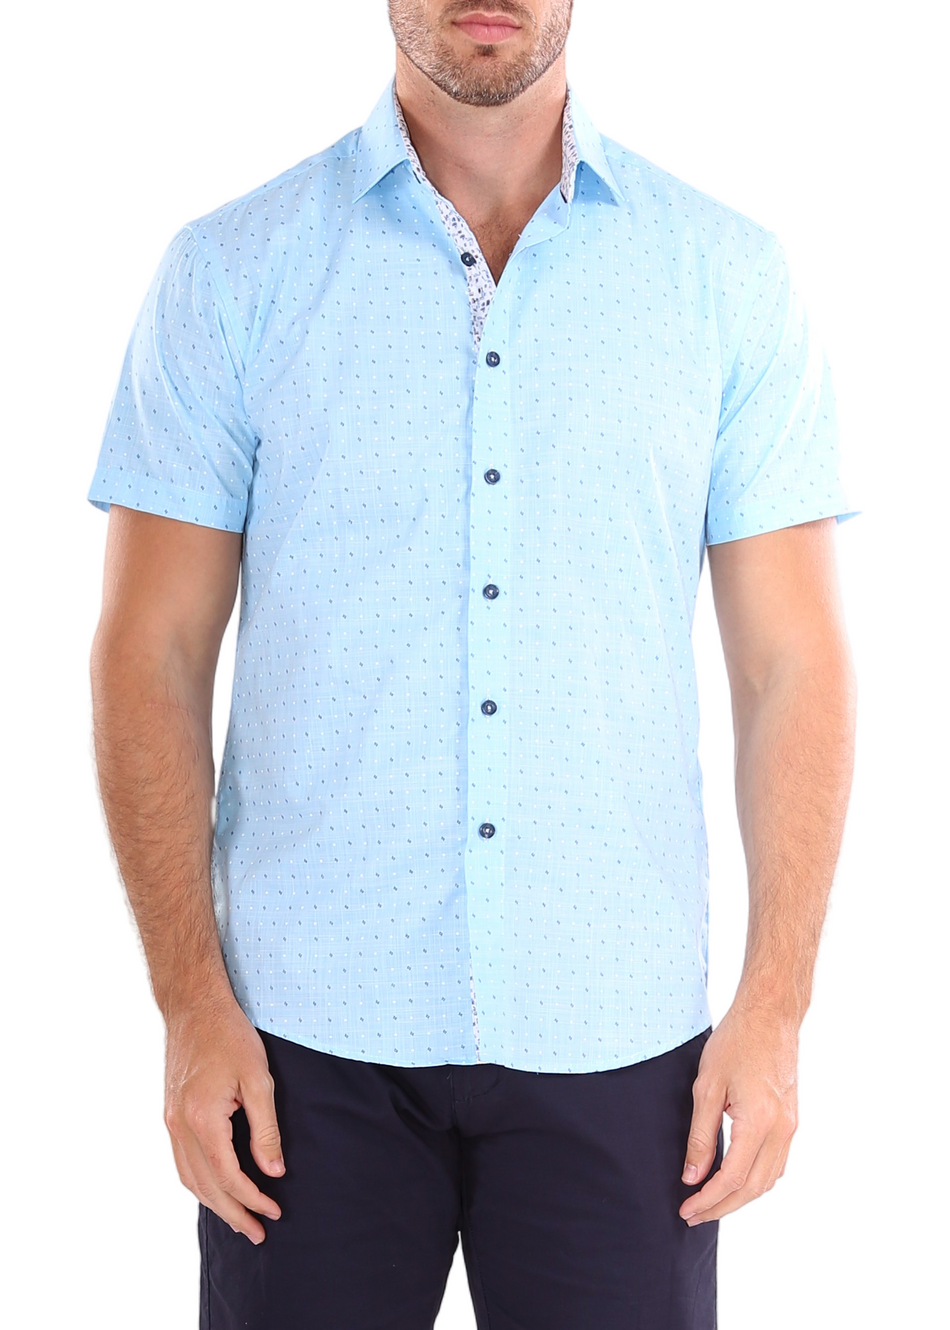 BESPOKE - 202127 Men's Blue Short Sleeve Dress Shirt - Modern Fit